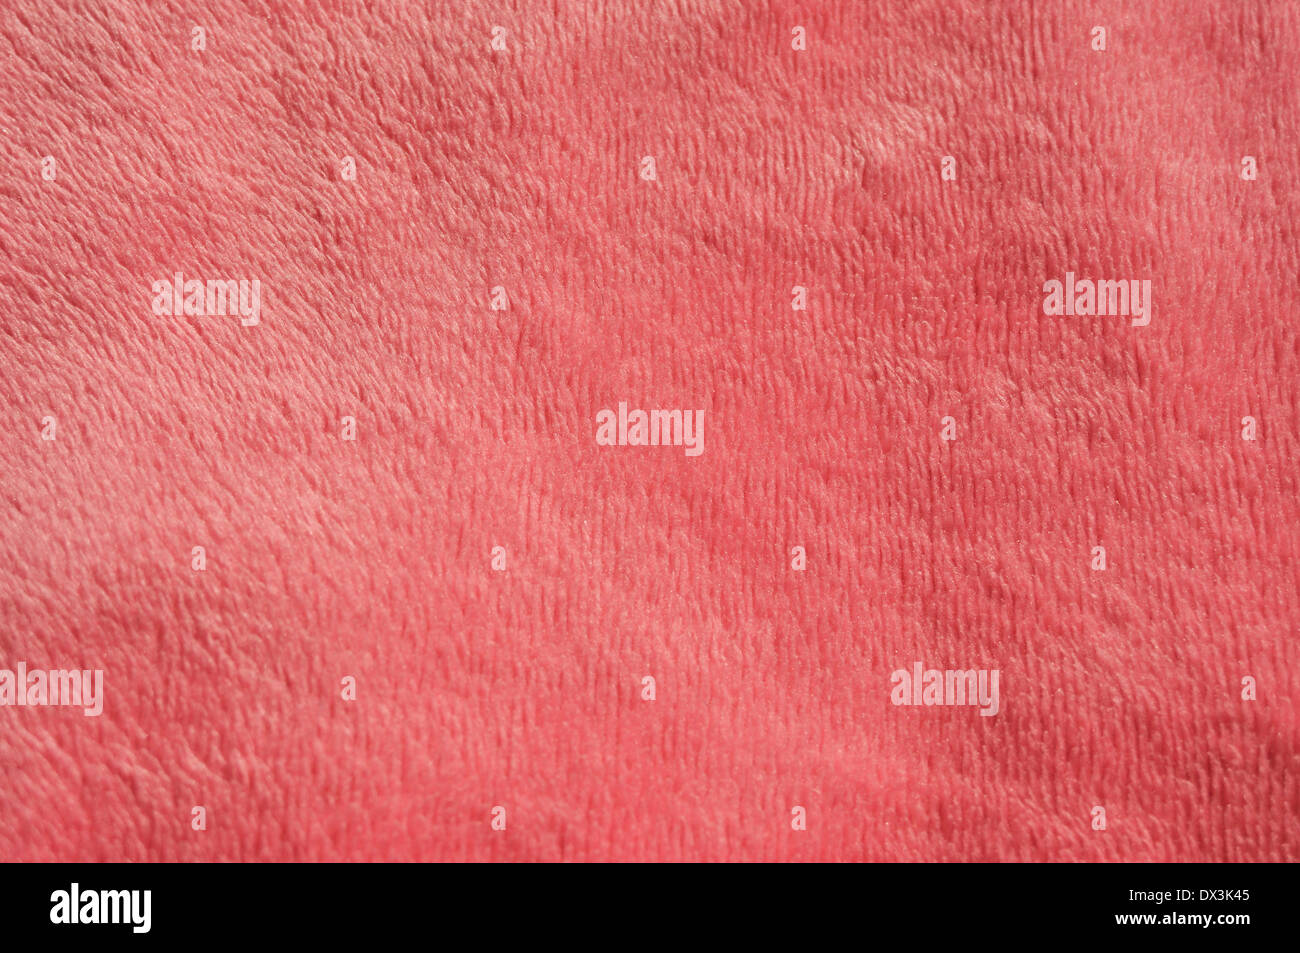 pink carpet texture Stock Photo